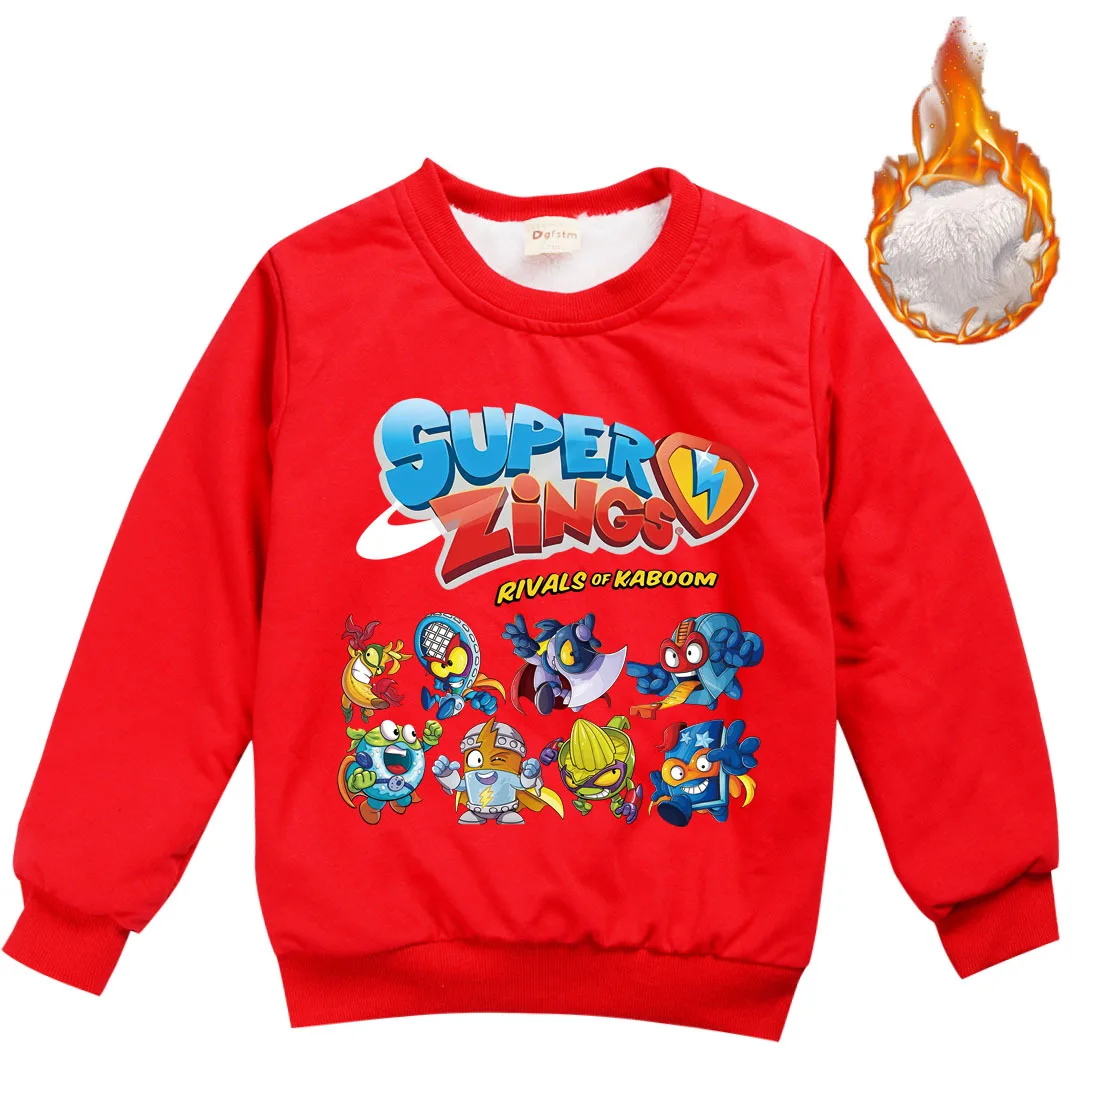 Зимняя одежда для мальчиков и девочек, свитер, верхняя одежда, супер zings superzings для маленьких детей, свитер, детская одежда, одежда для От 1 до 16...